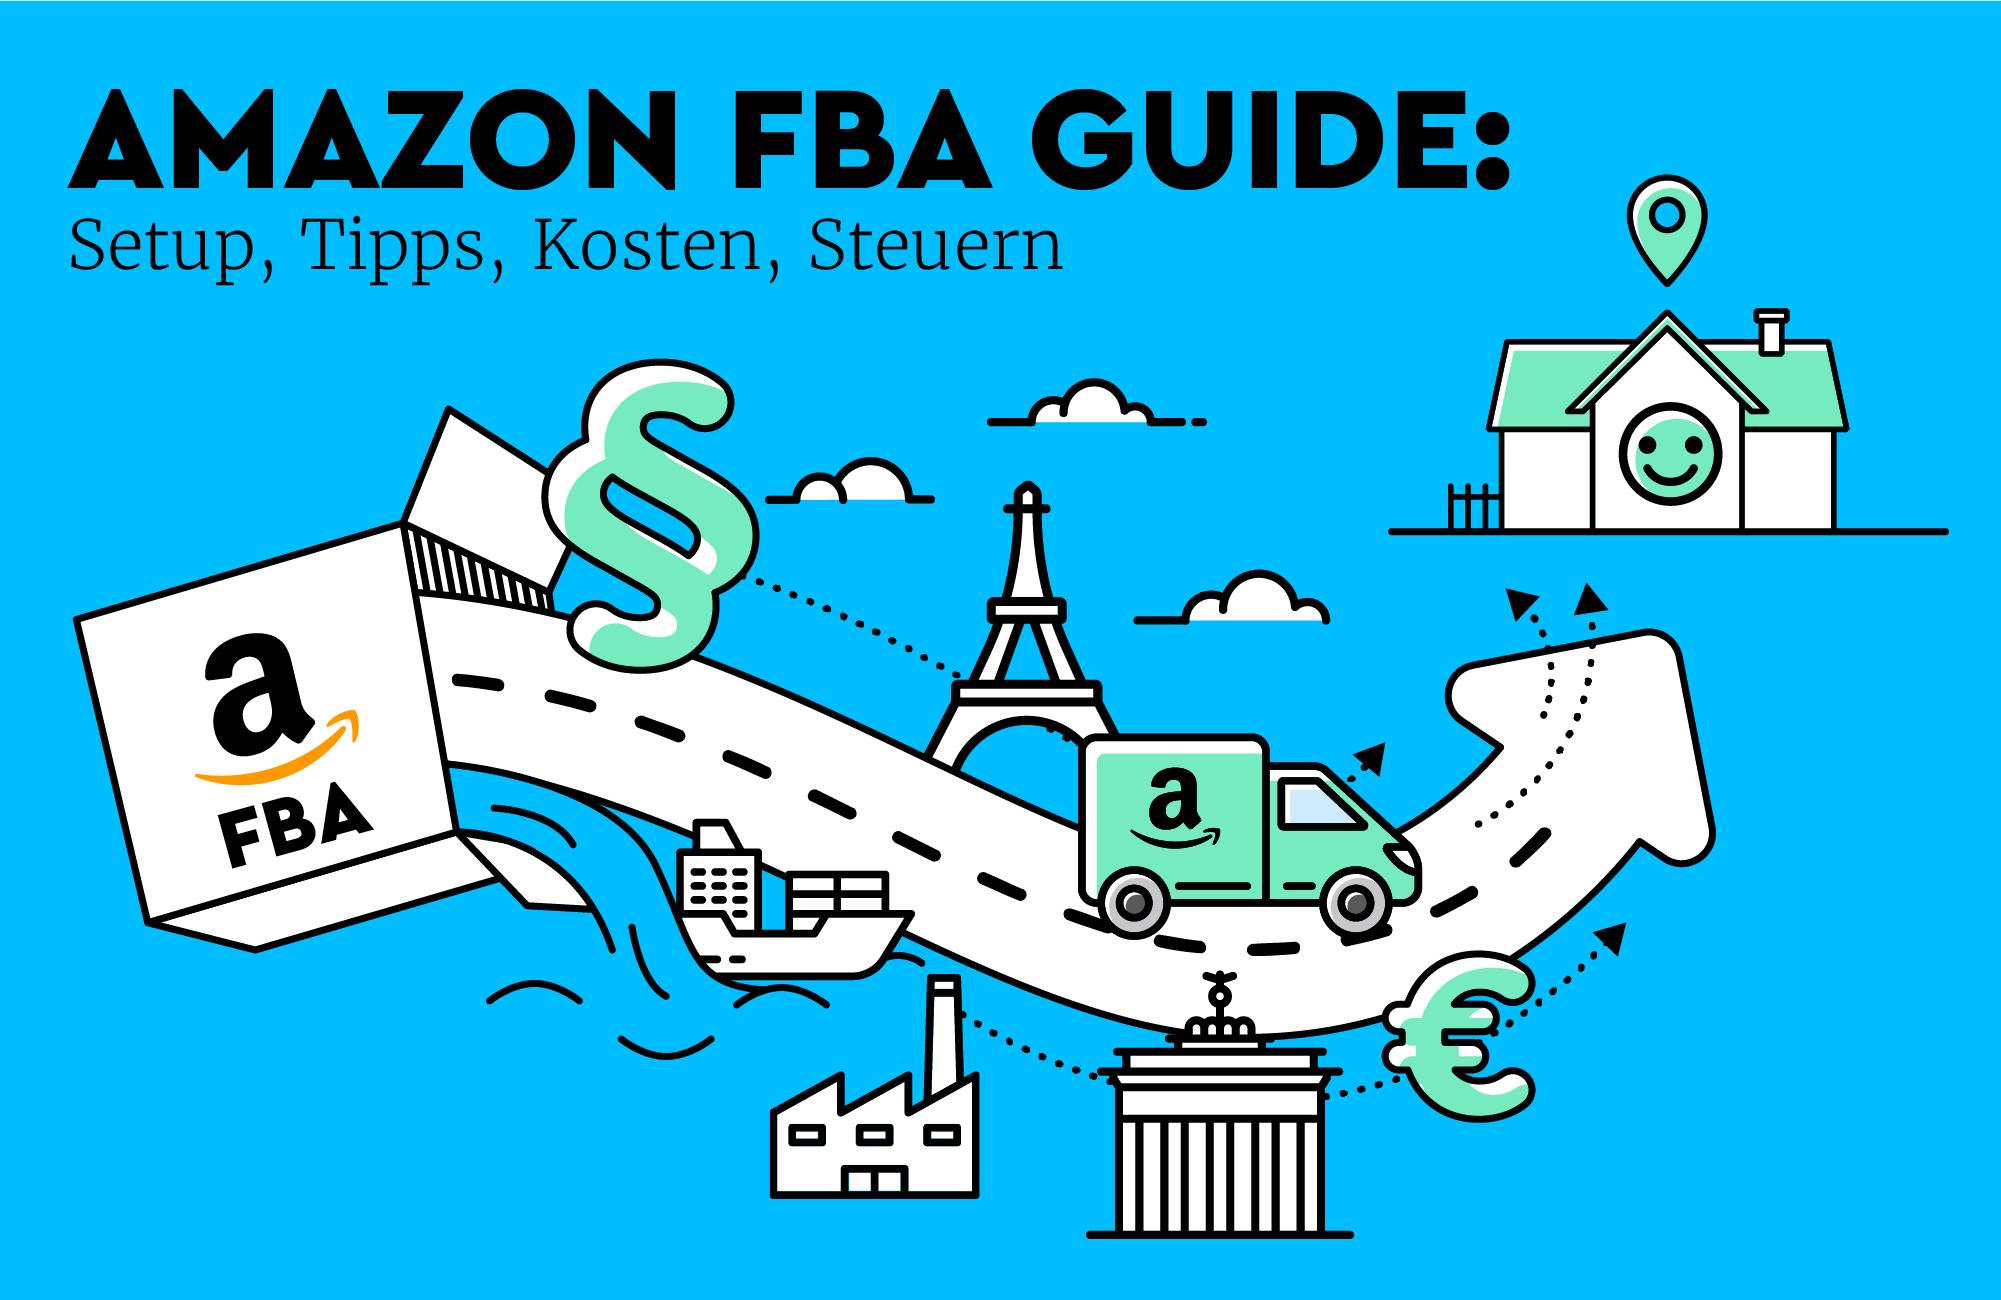 Amazon FBA Guide: Setup, Tipps, Kosten, Steuern